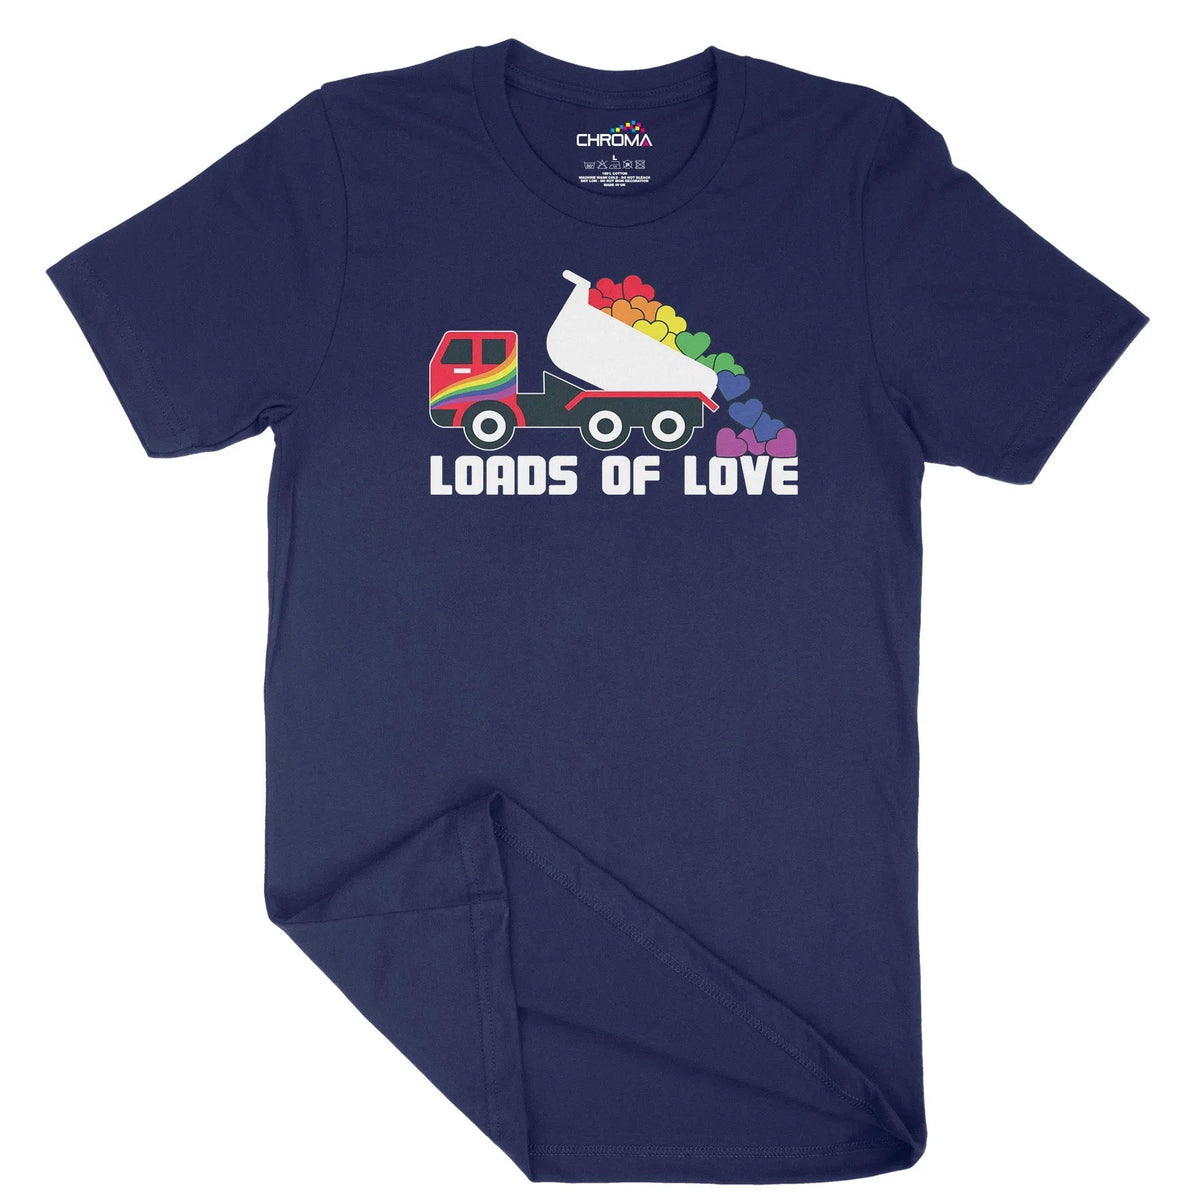 Loads Of Love Unisex Adult T-Shirt | Quality Slogan Clothing Chroma Clothing